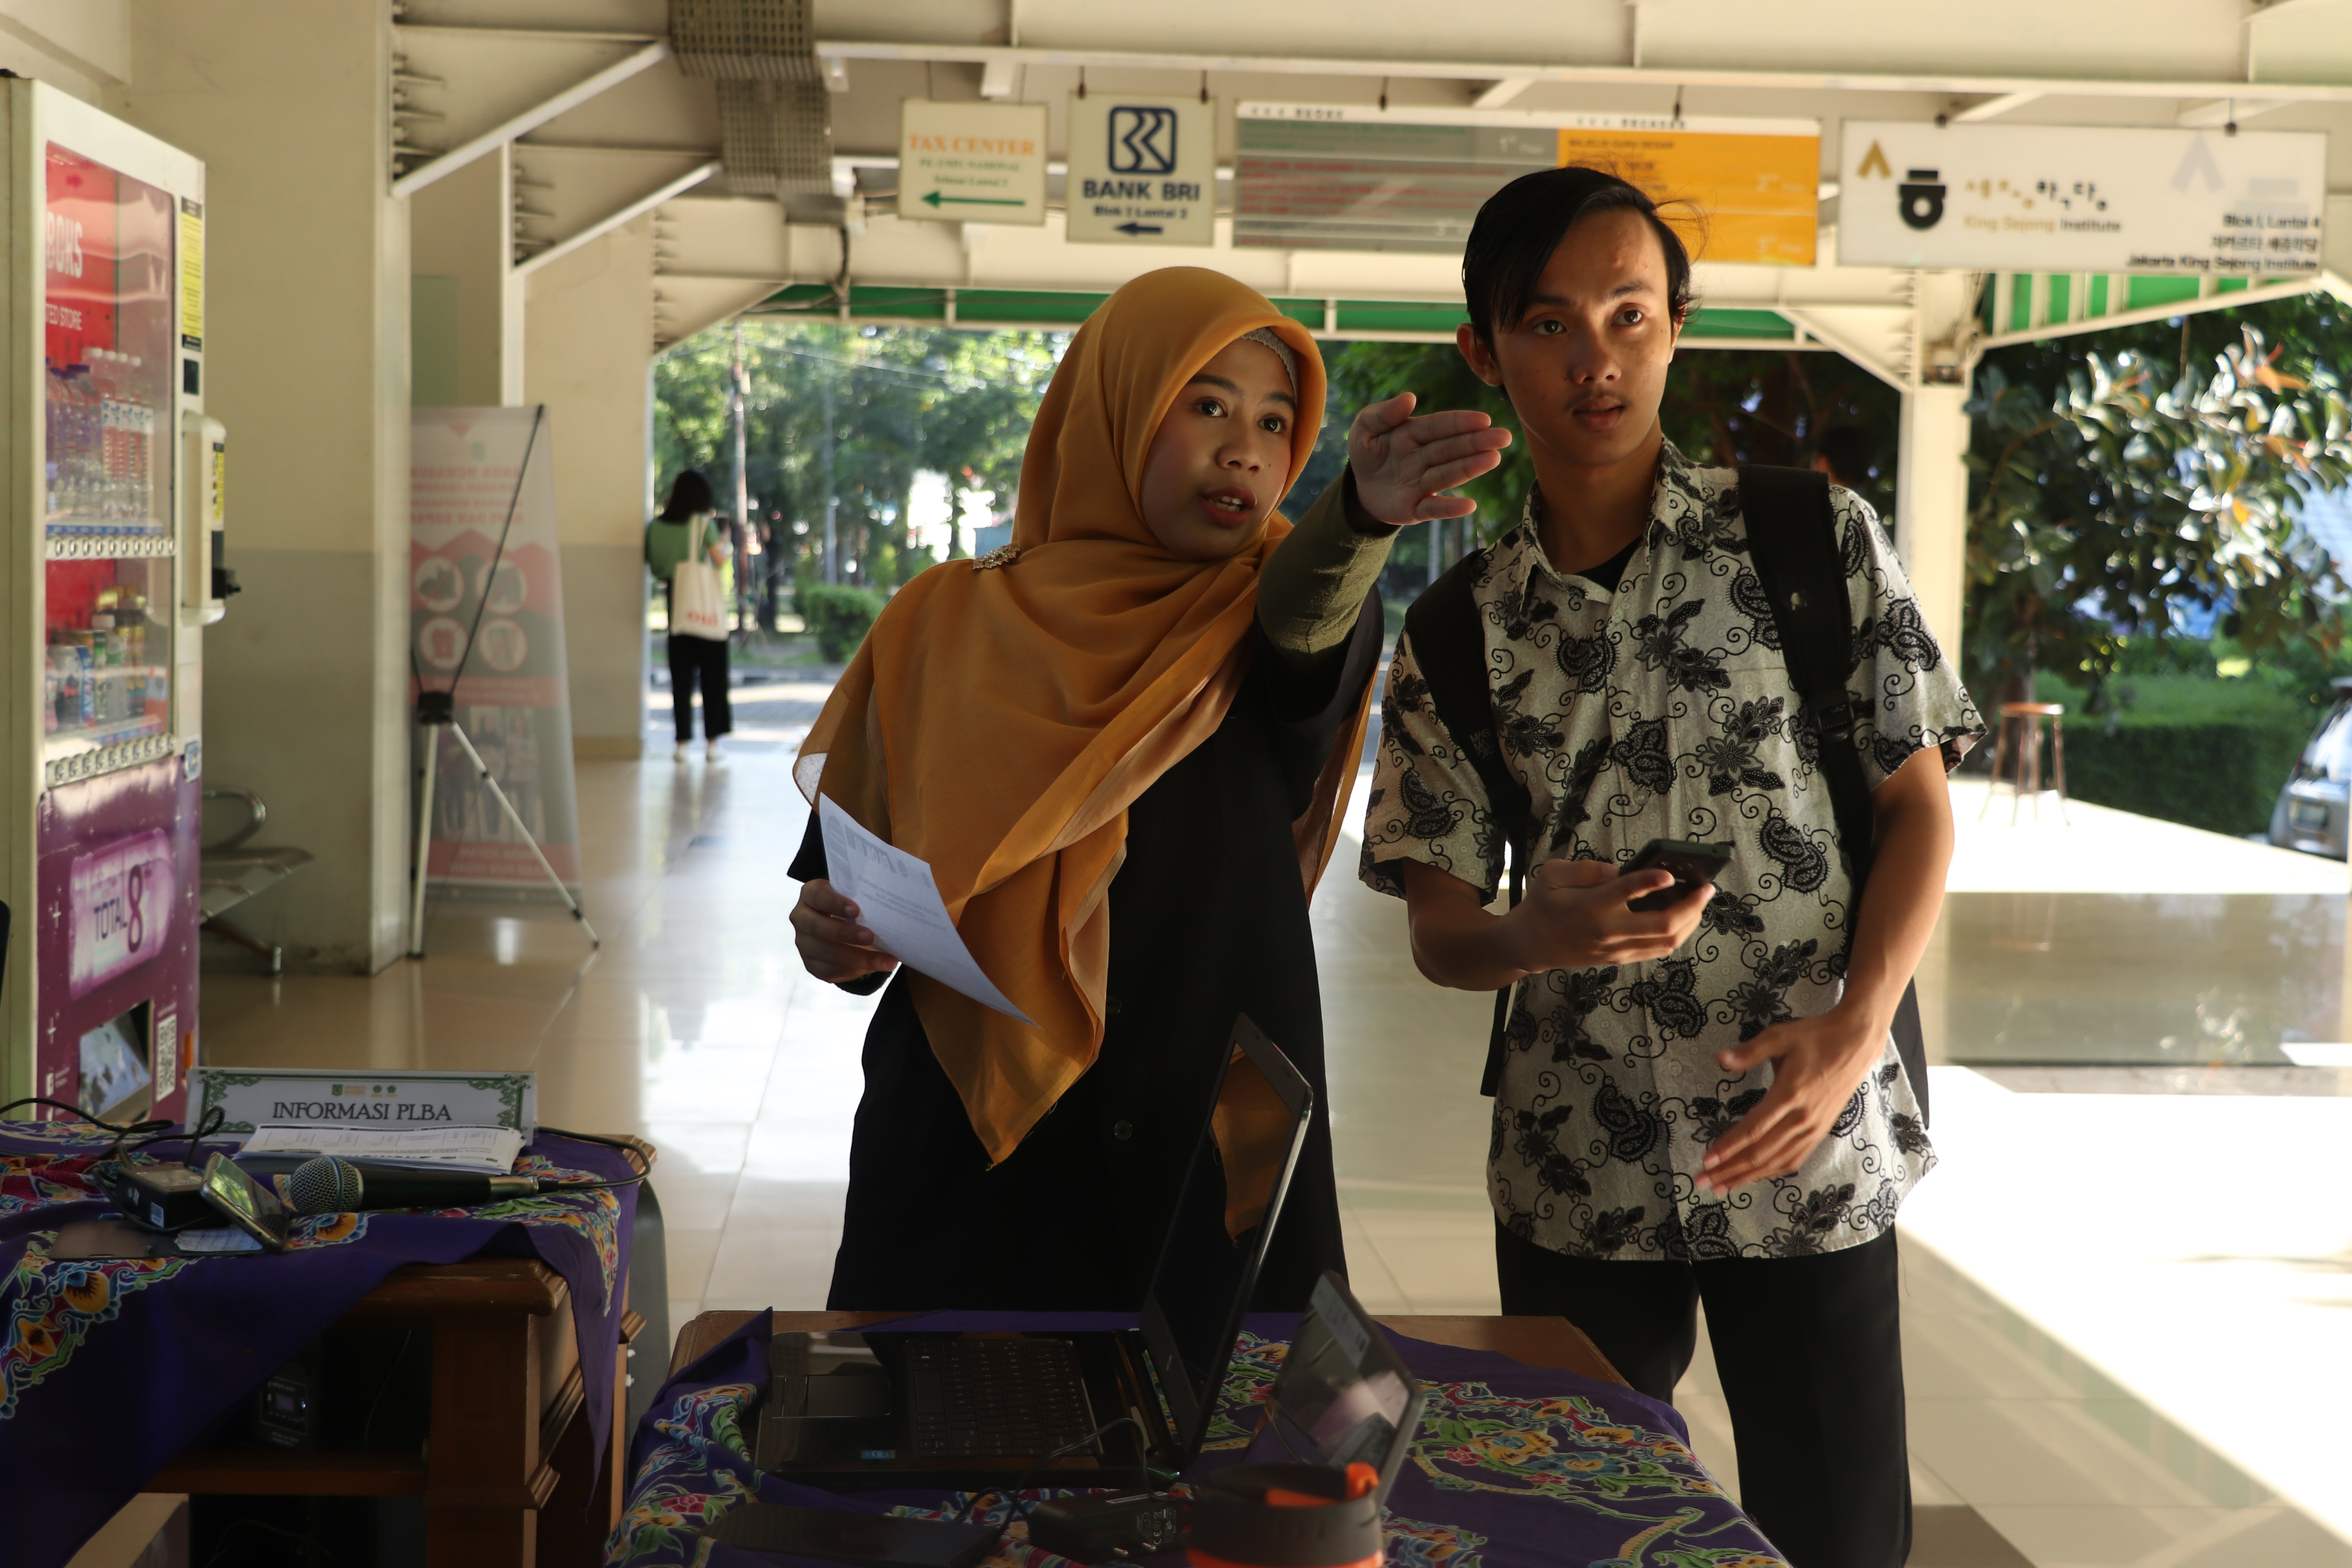 Panitia mengarahkan peserta ke kelas pada kegiatan pengenalan lingkungan budaya akademik Universitas Nasional, di Jakarta (21/3)